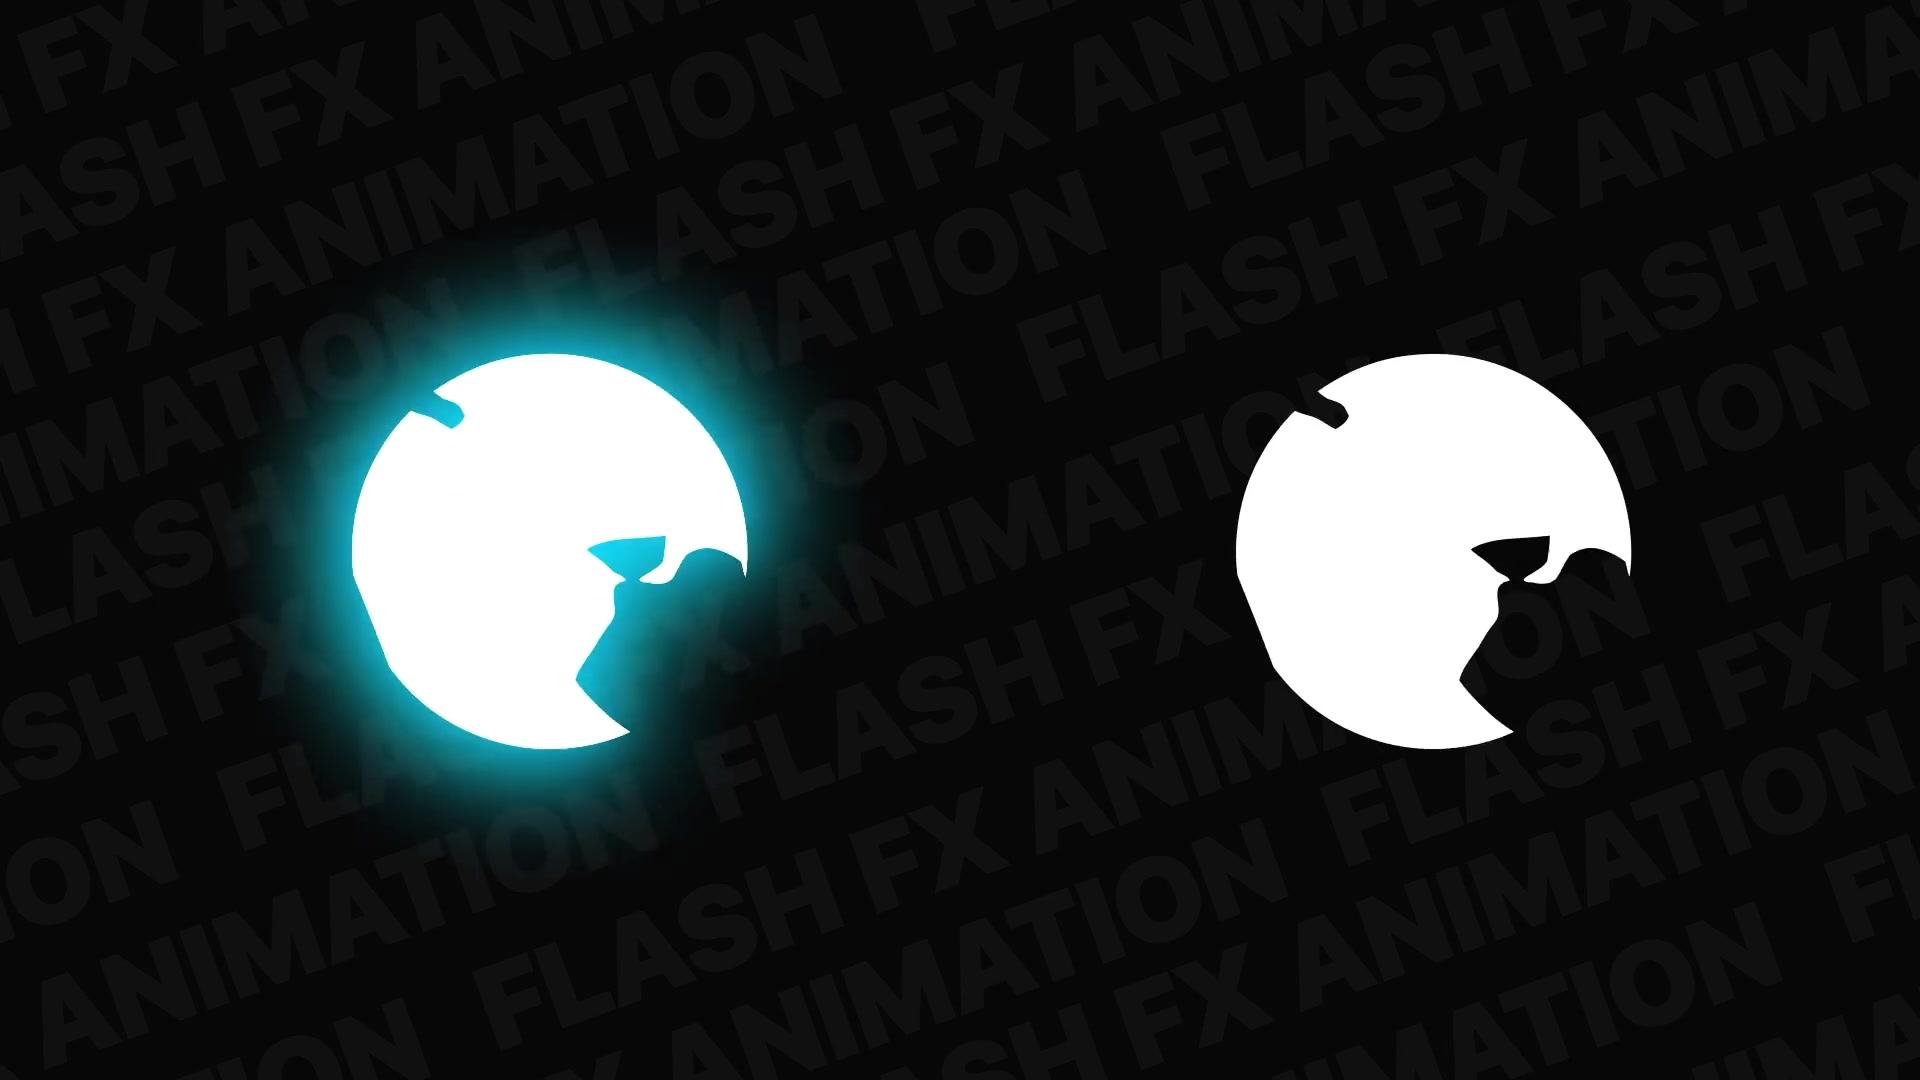 Flash FX Pack | Premiere Pro MOGRT Videohive 31542506 Premiere Pro Image 7